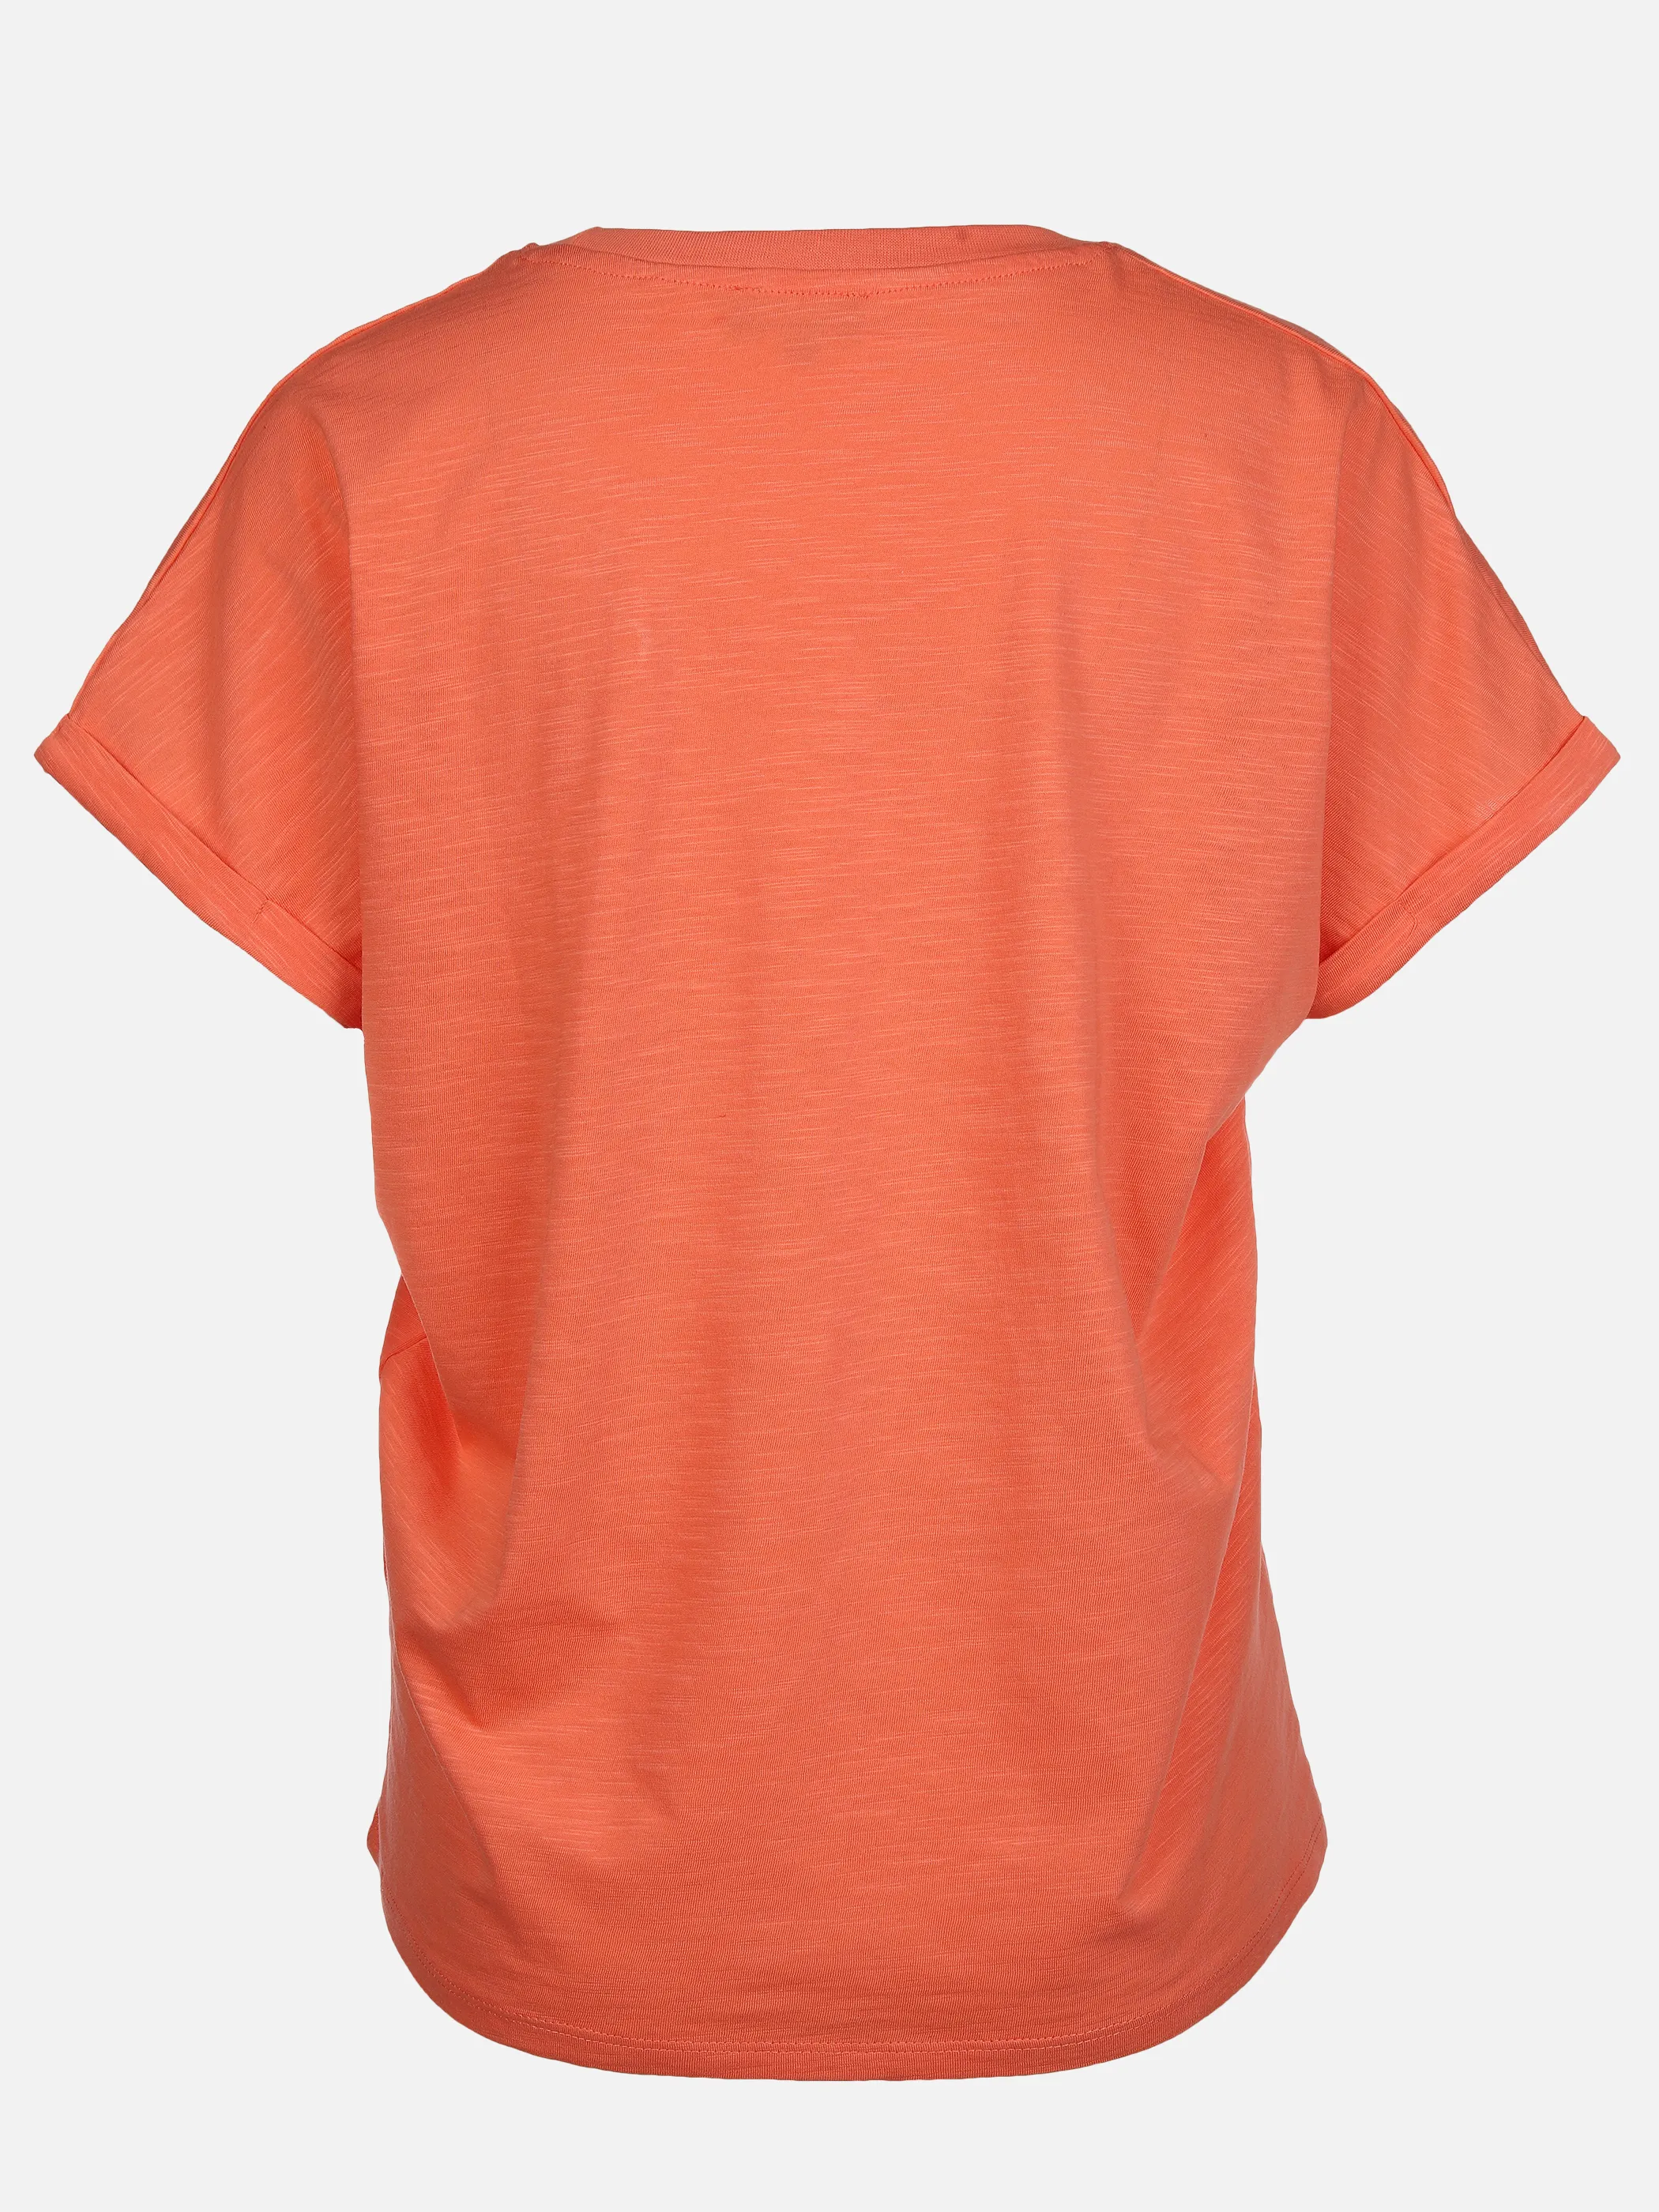 Sure Da-T-Shirt m. Frontartwork Orange 873372 PAPAYA 2